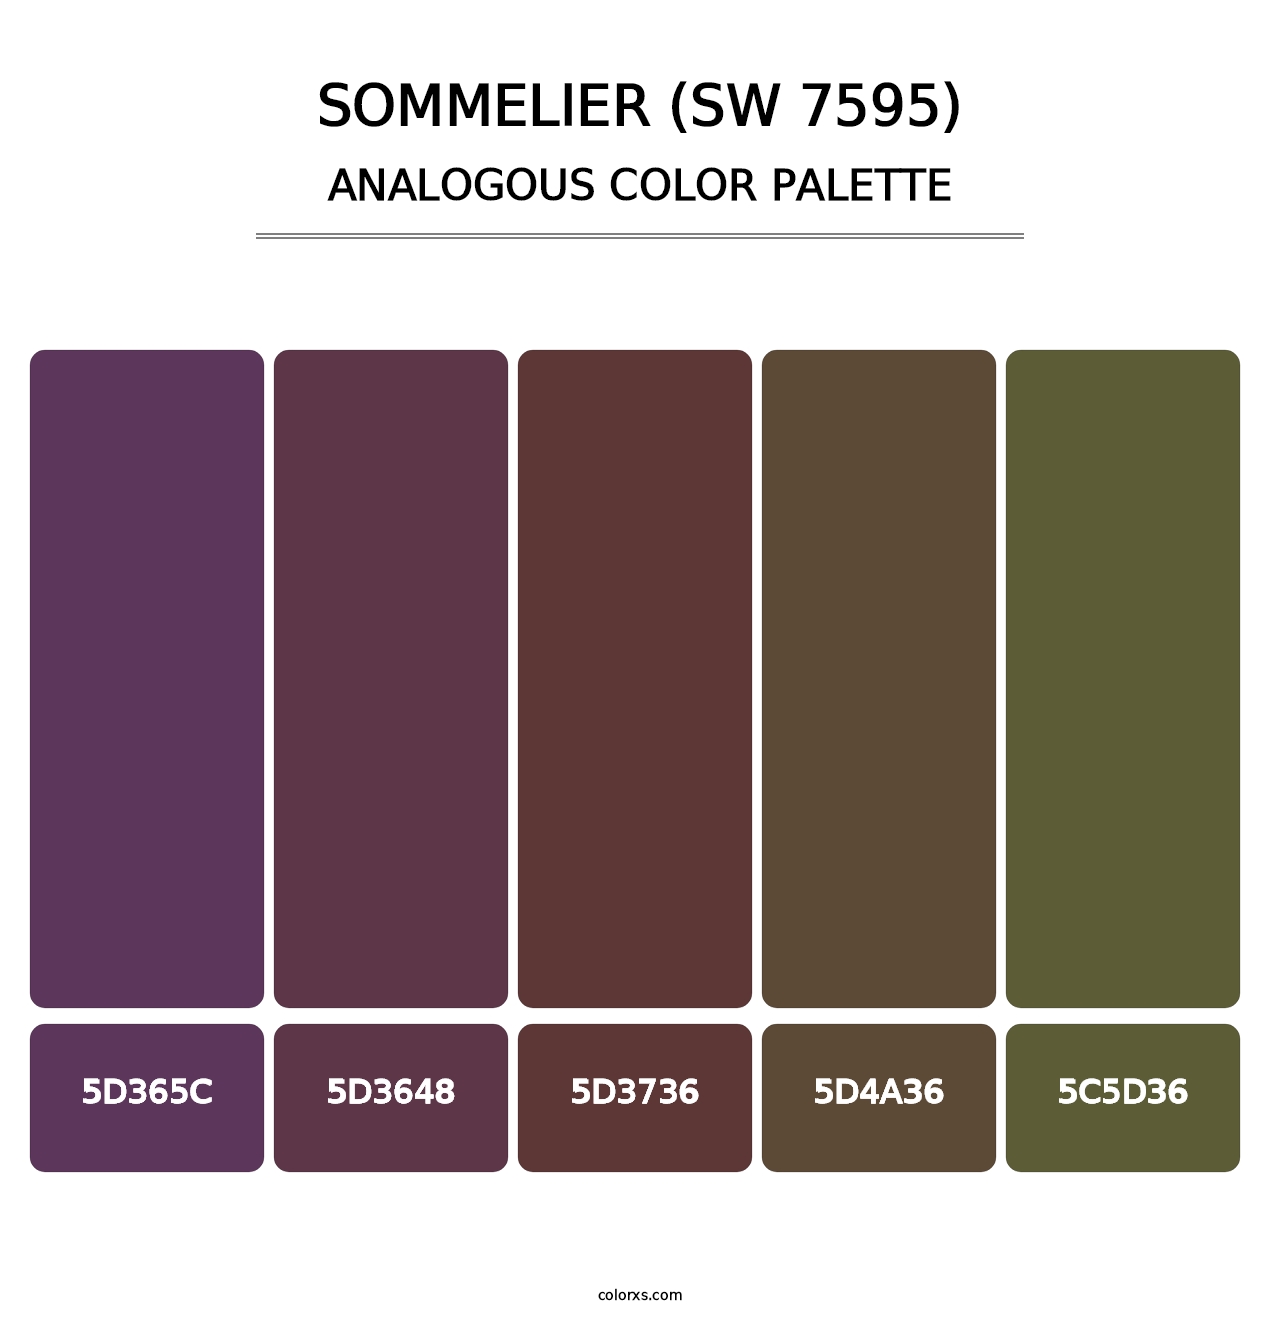 Sommelier (SW 7595) - Analogous Color Palette